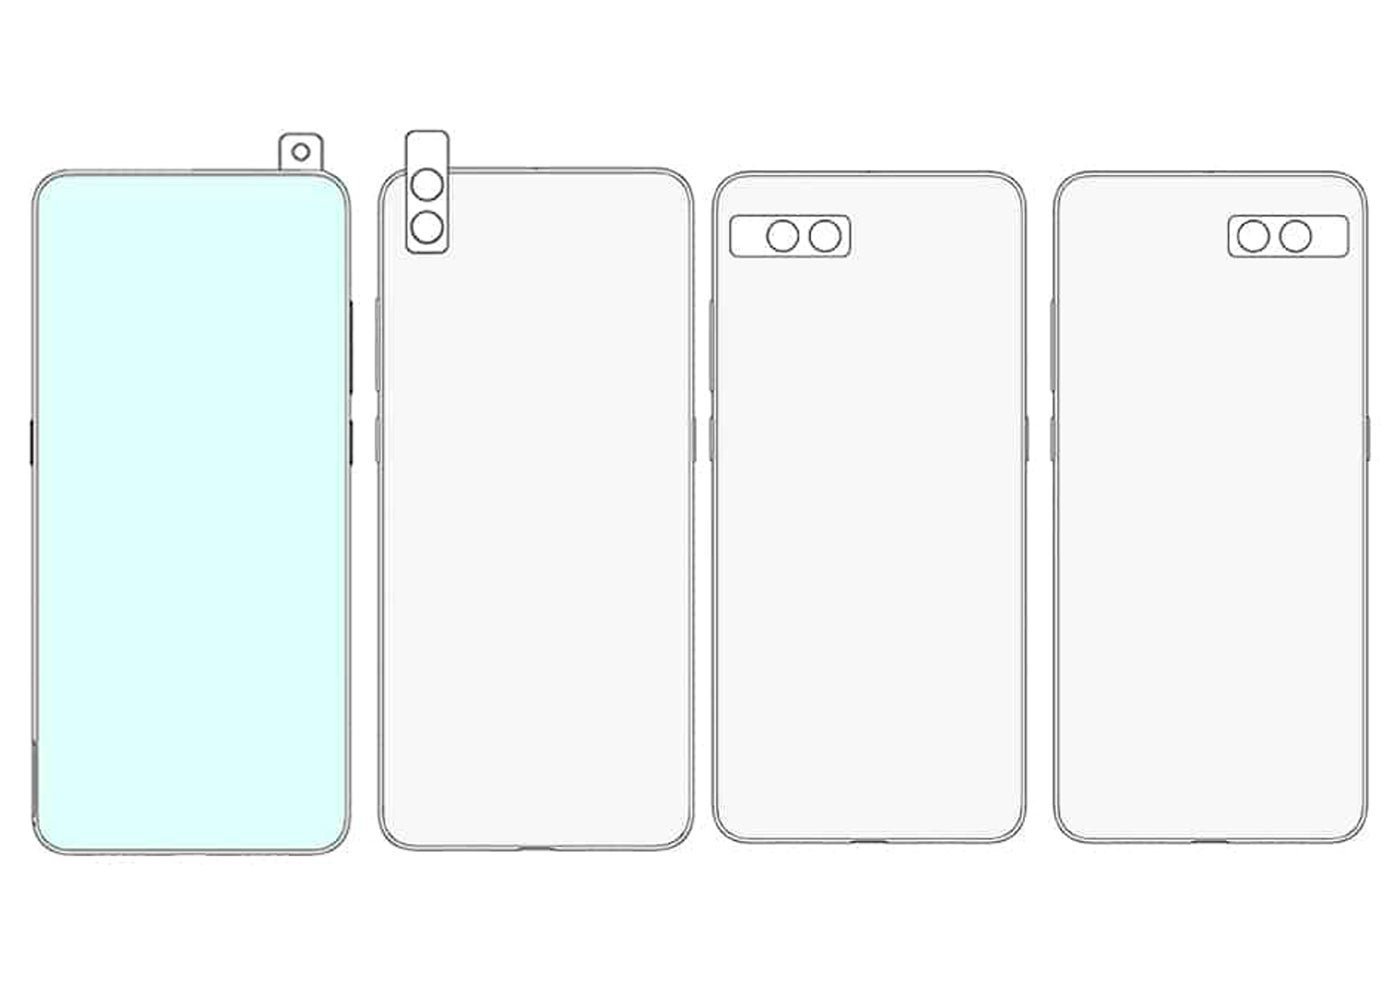 Xiaomi patente cámara pop-up